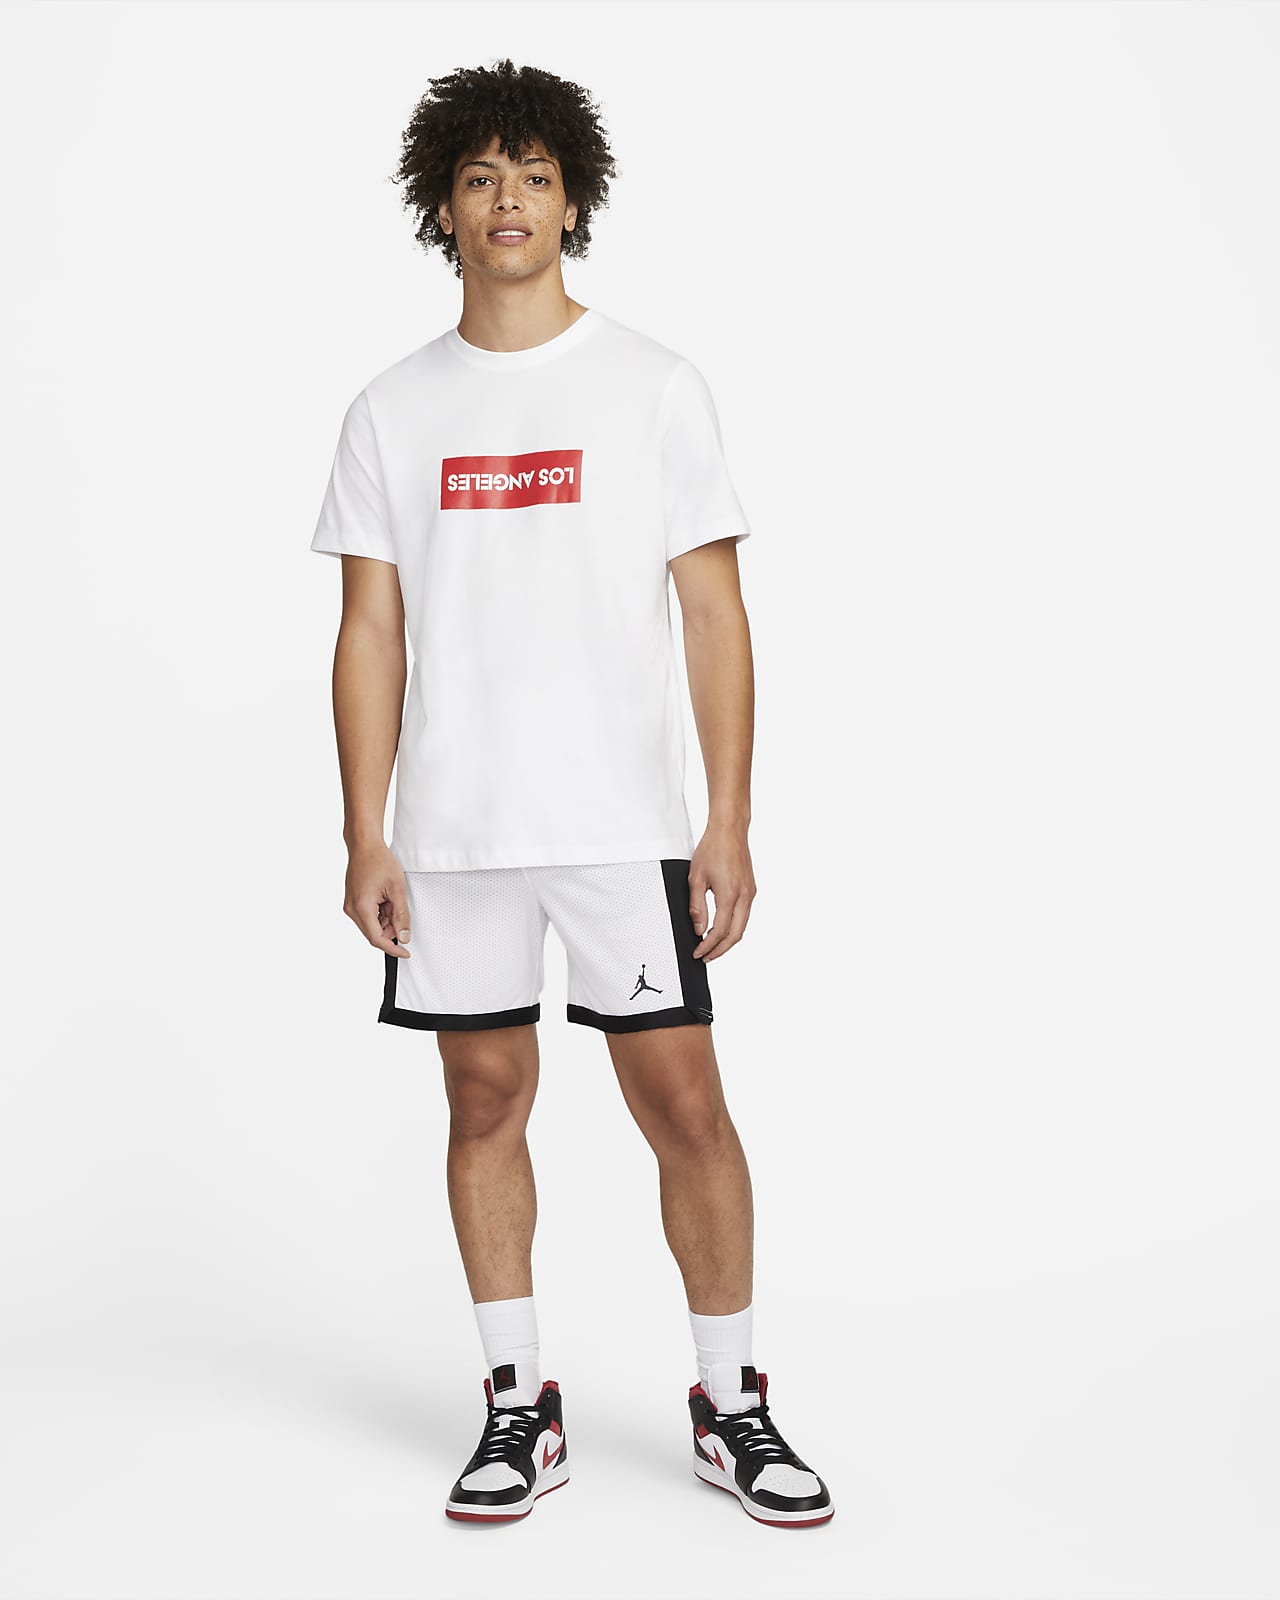 Jordan Men's Dri-Fit Mesh Shorts, XXL, White